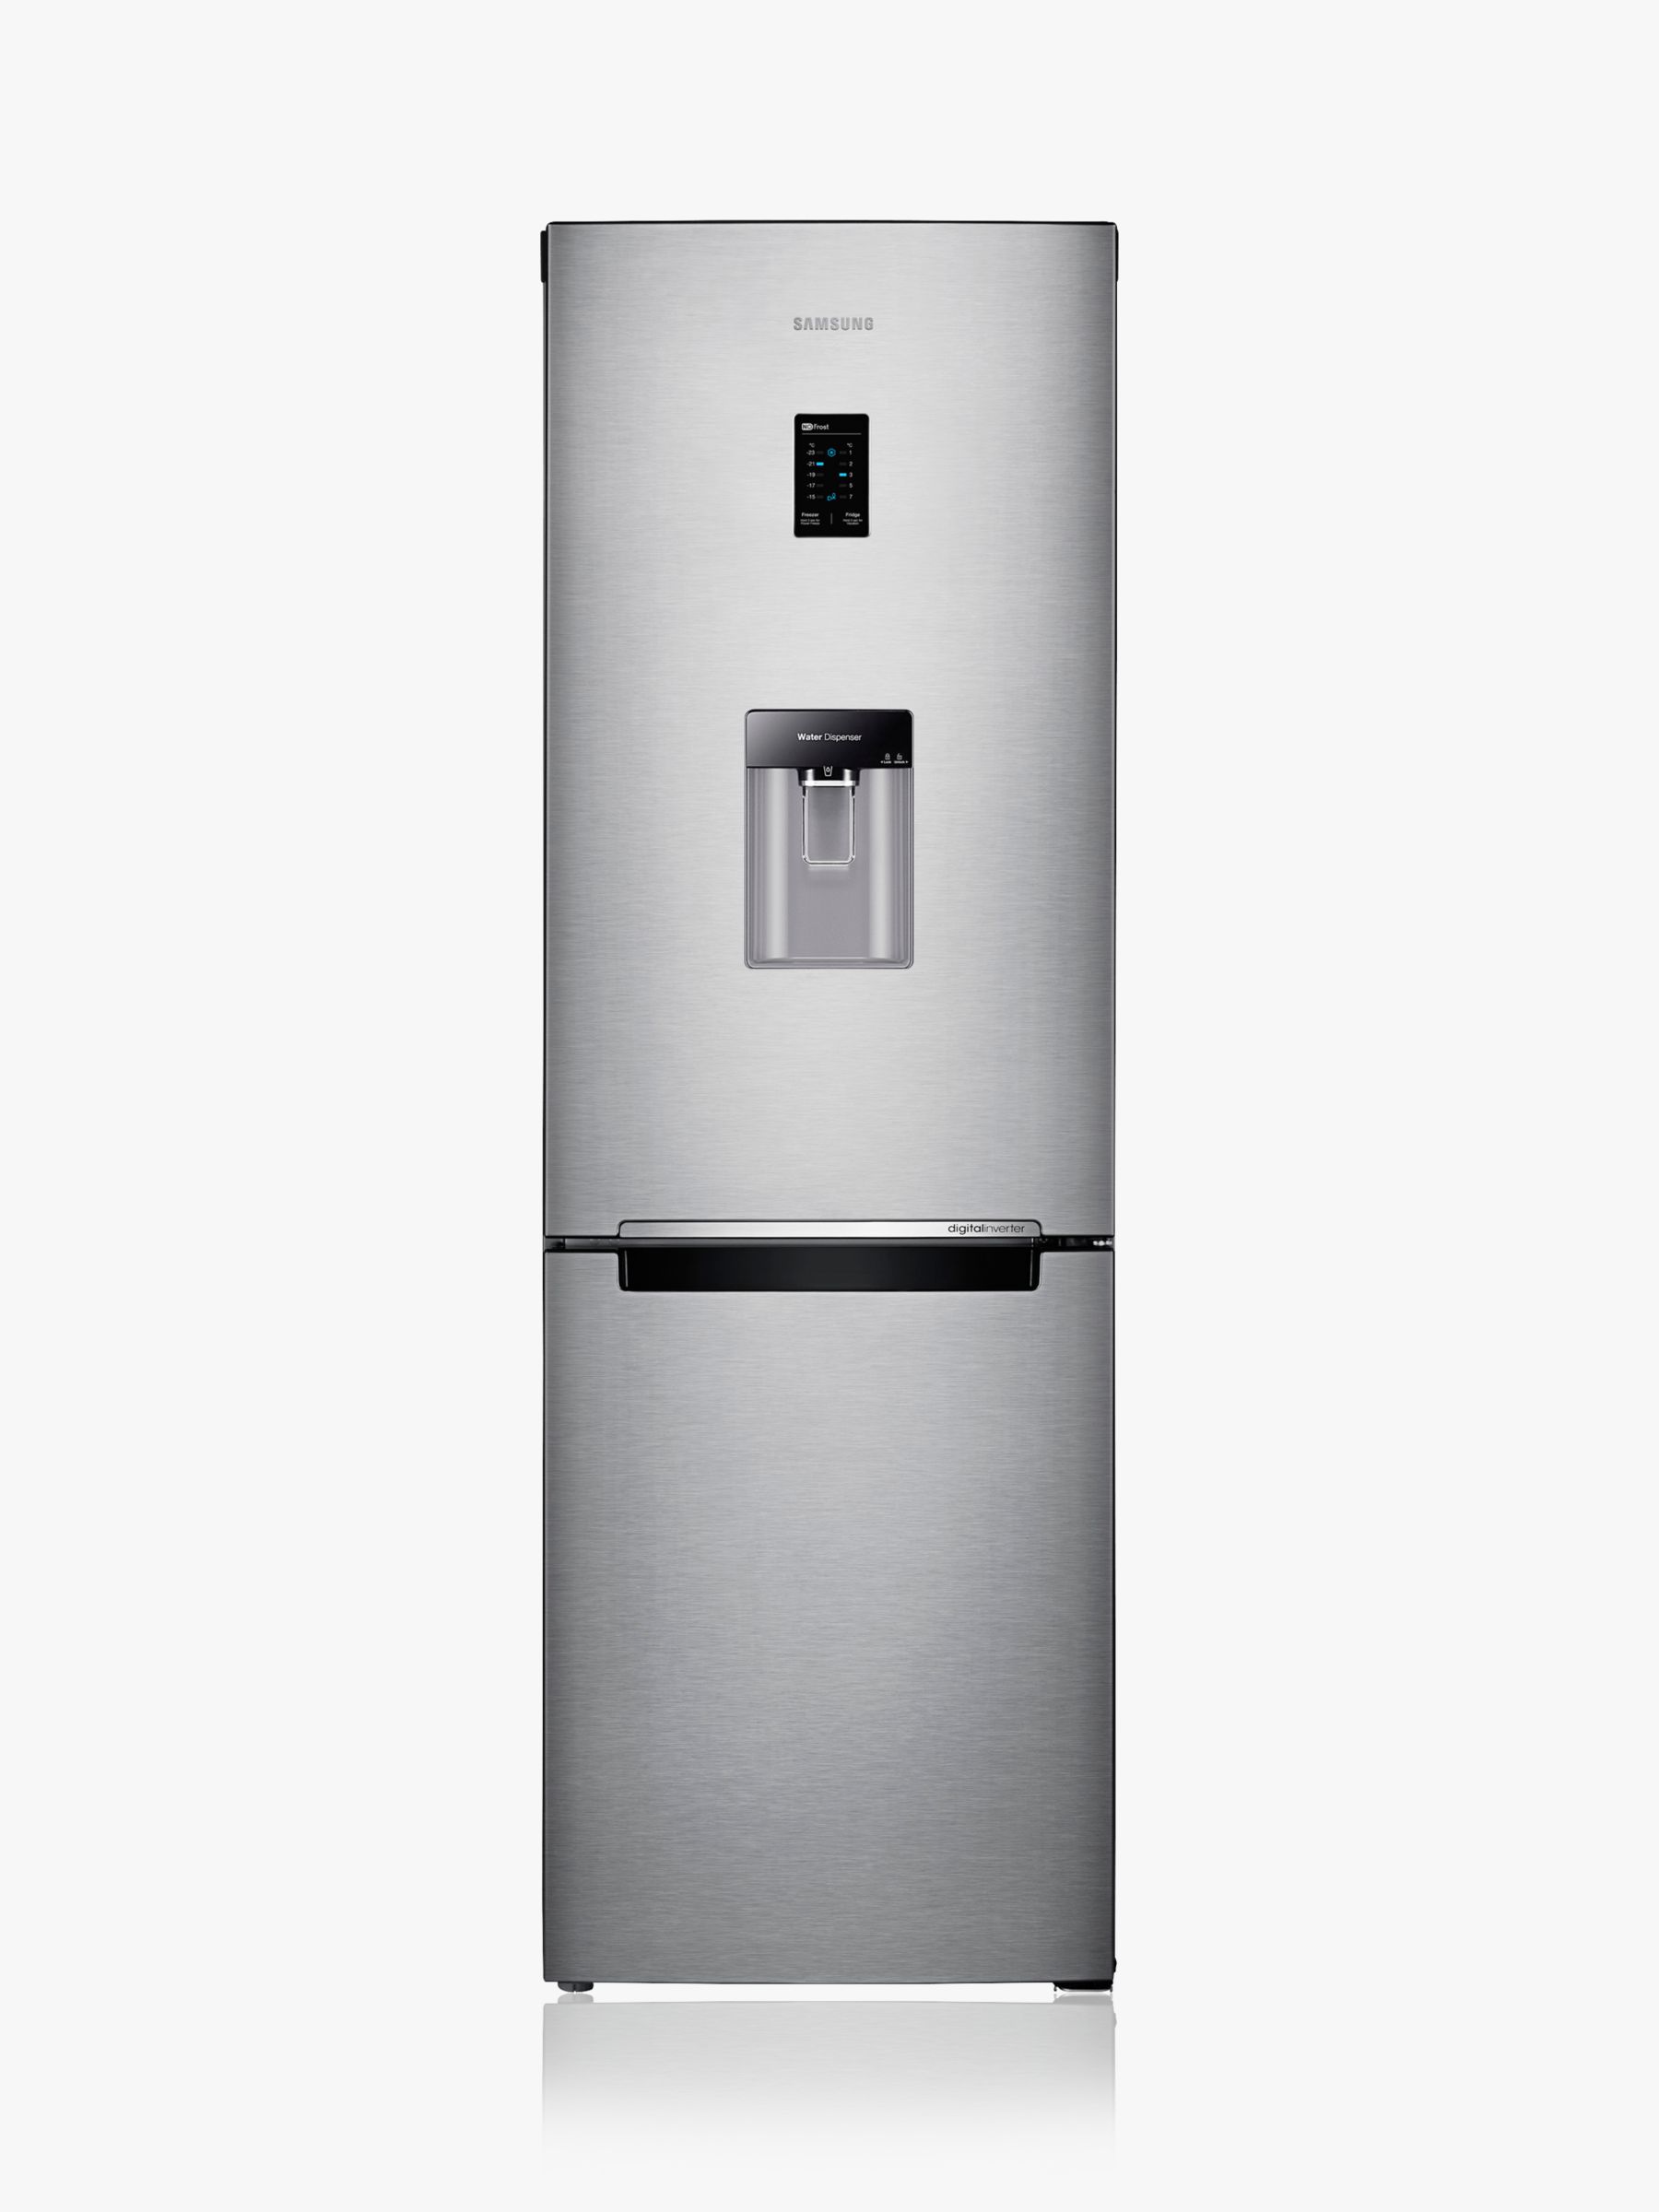 Samsung RB31FDRNDSA Fridge Freezer, A+ Energy Rating, 60cm Wide, Silver